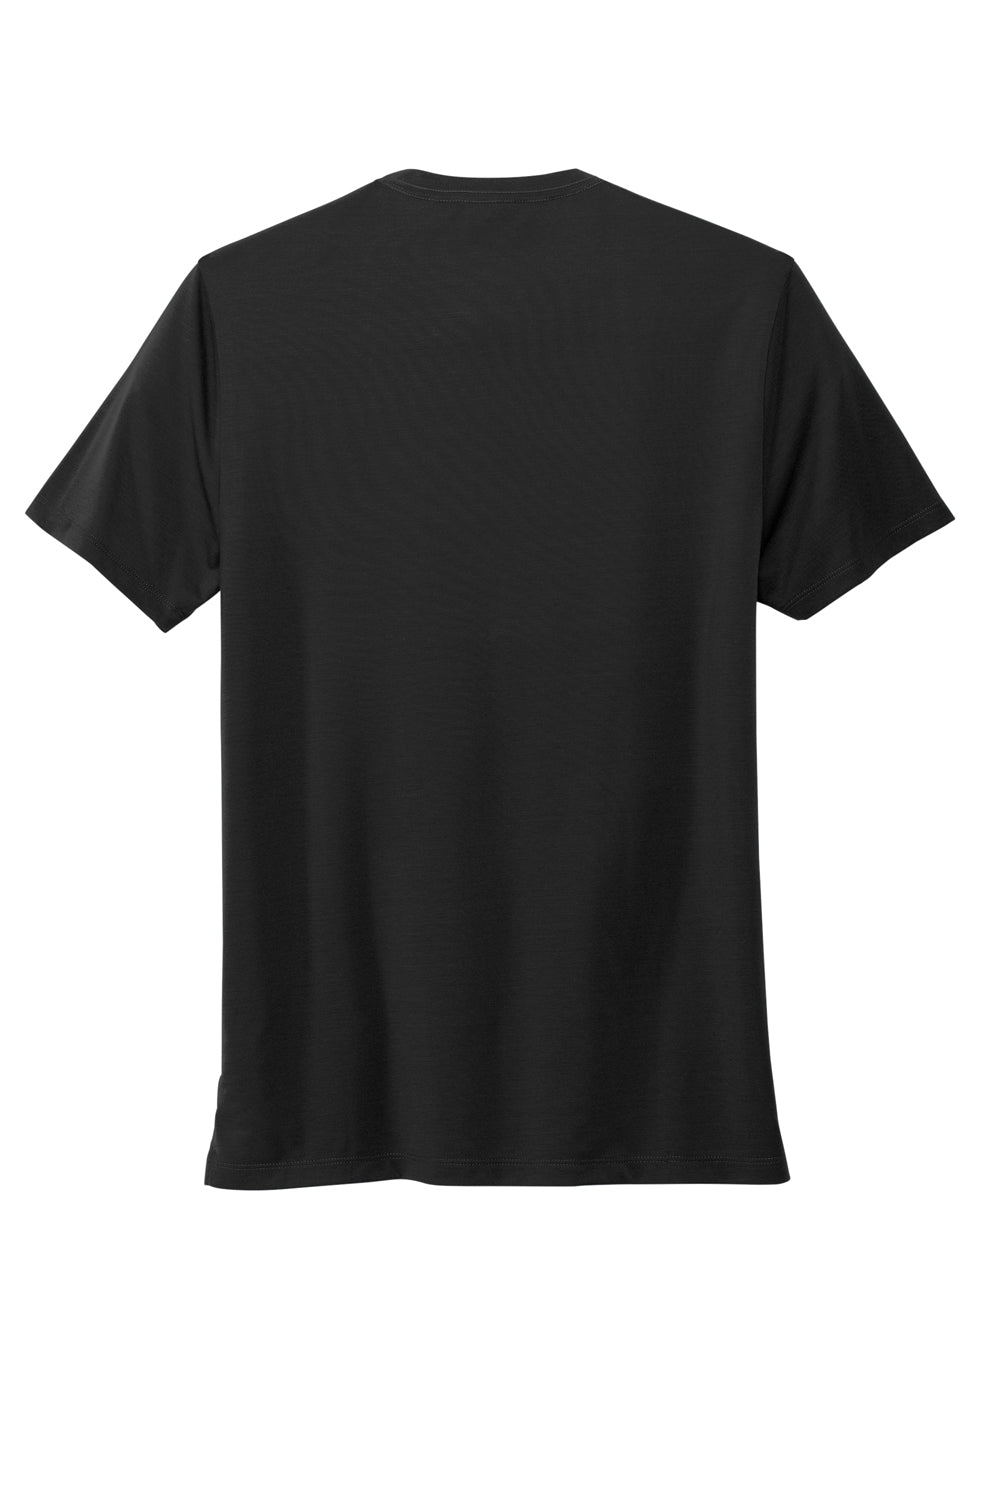 Mercer+Mettle MM1016 Stretch Jersey Short Sleeve Crewneck T-Shirt Deep Black Flat Back